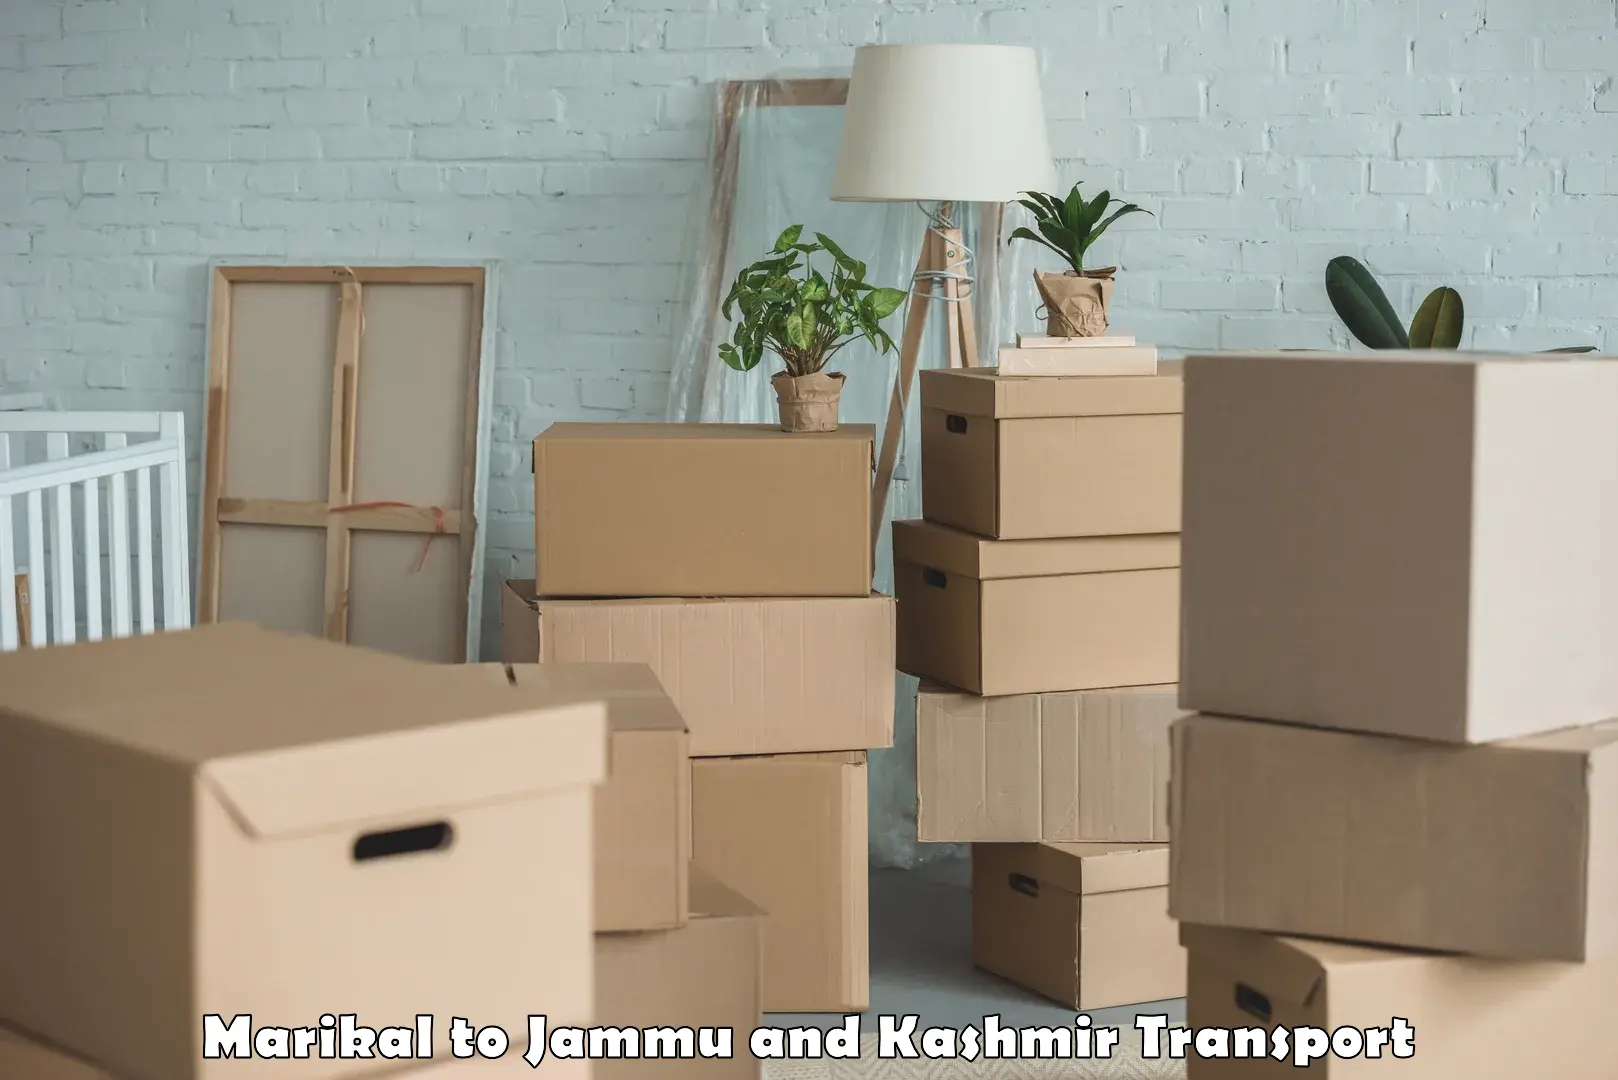 Furniture transport service Marikal to Jammu and Kashmir